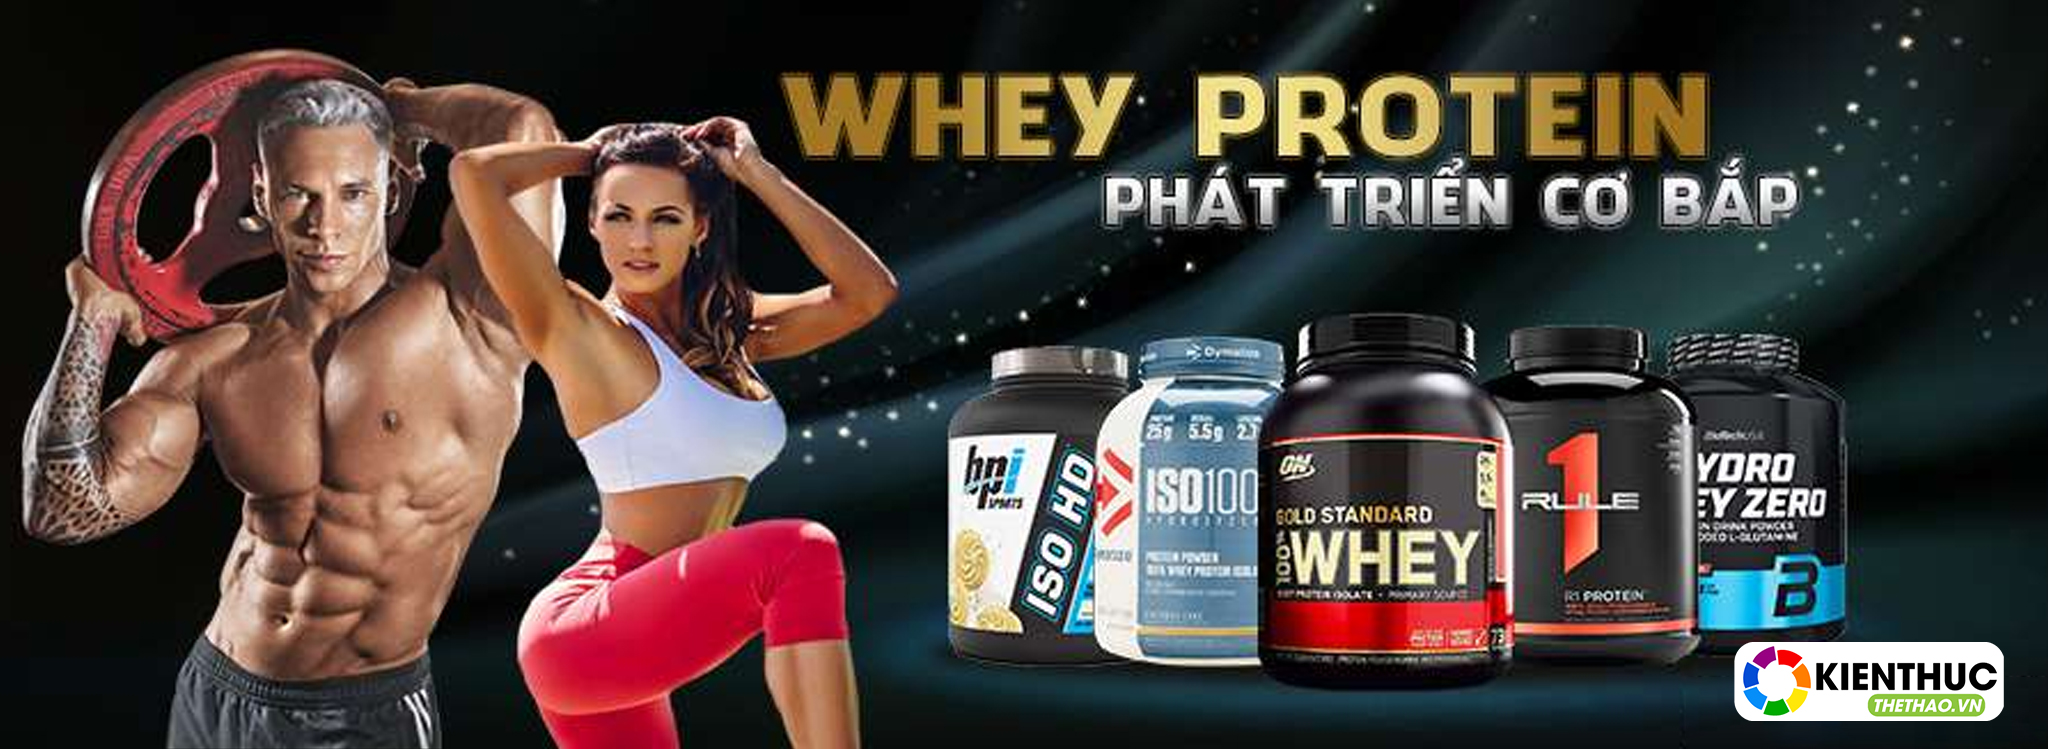 Bạn đã thật sự hiểu rõ lượi ích và tác dụng của Whey Protein ?